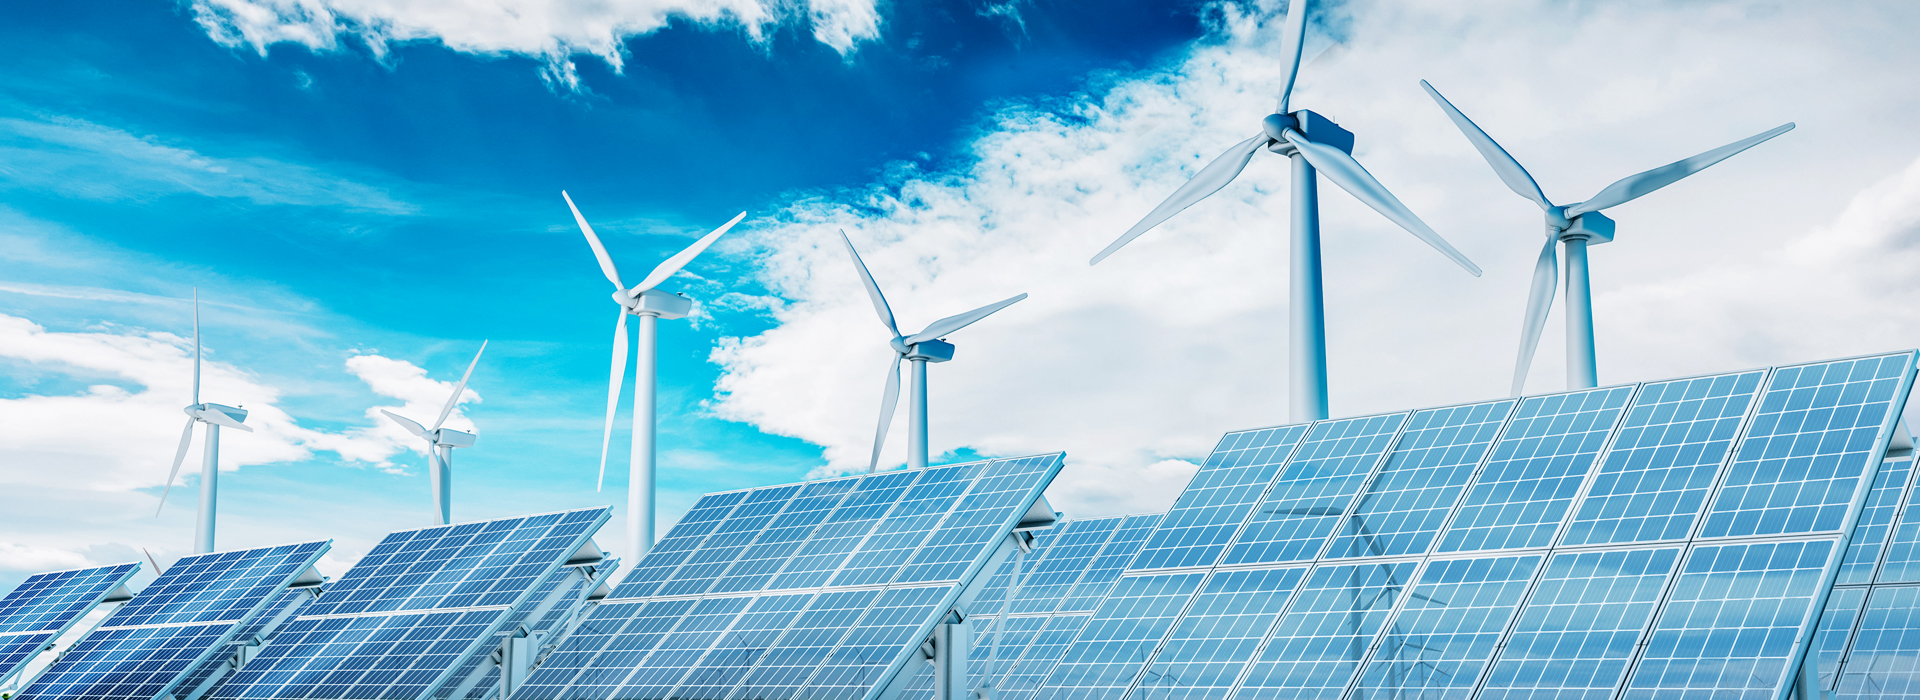 Transição energética: solução verde ou negócio?